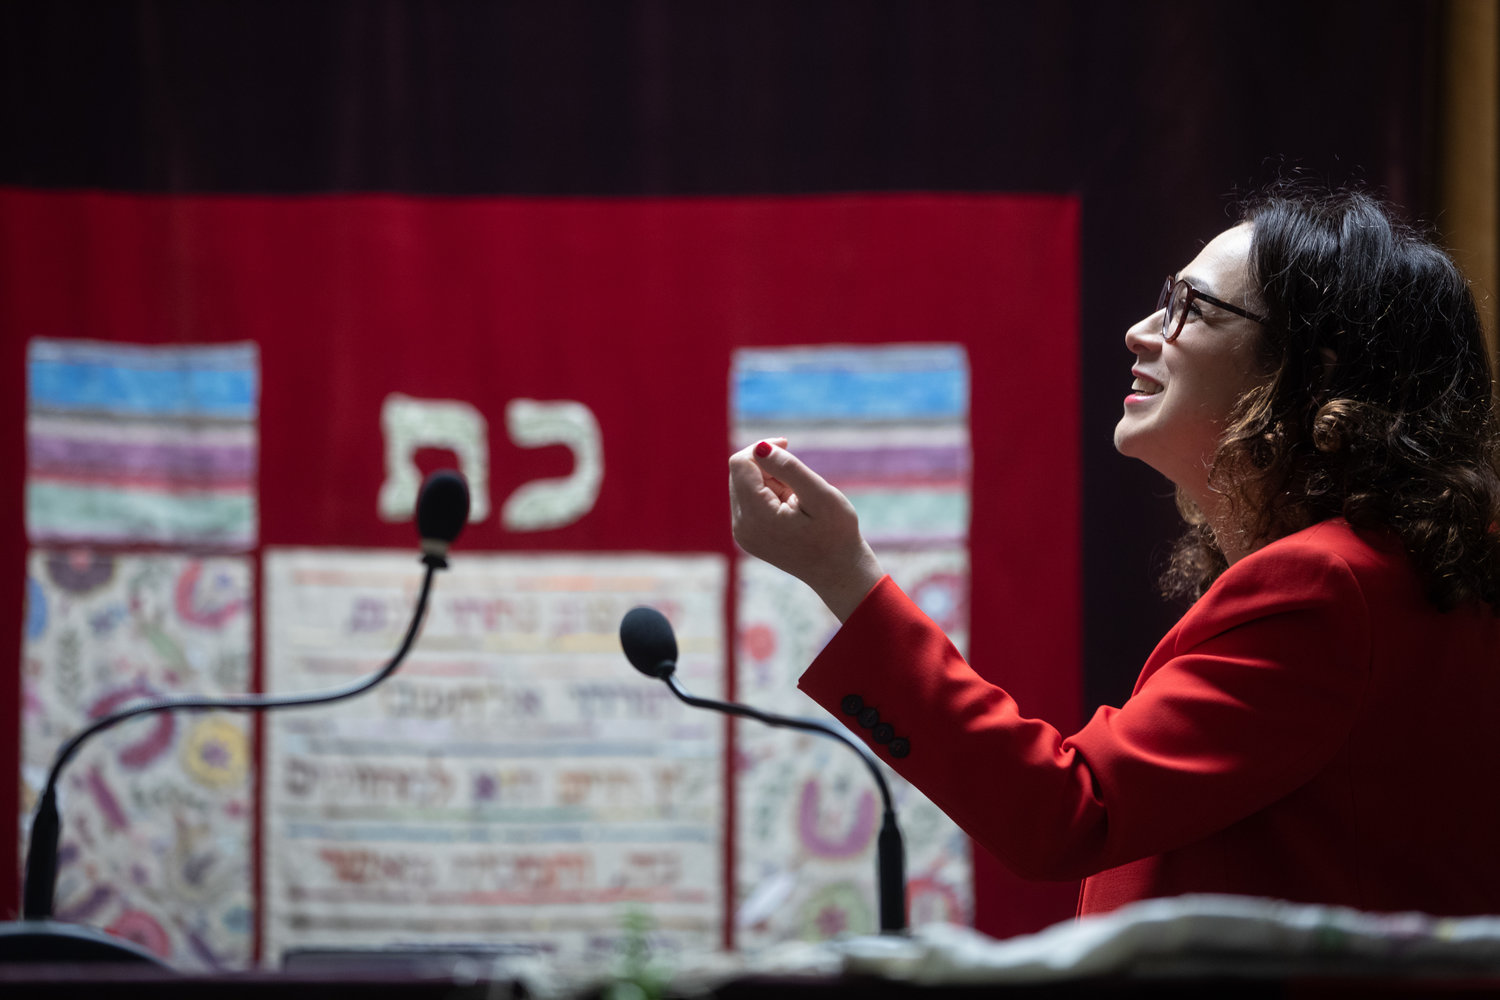 Rabbi Delphine Horvilleur has found a large audience online.